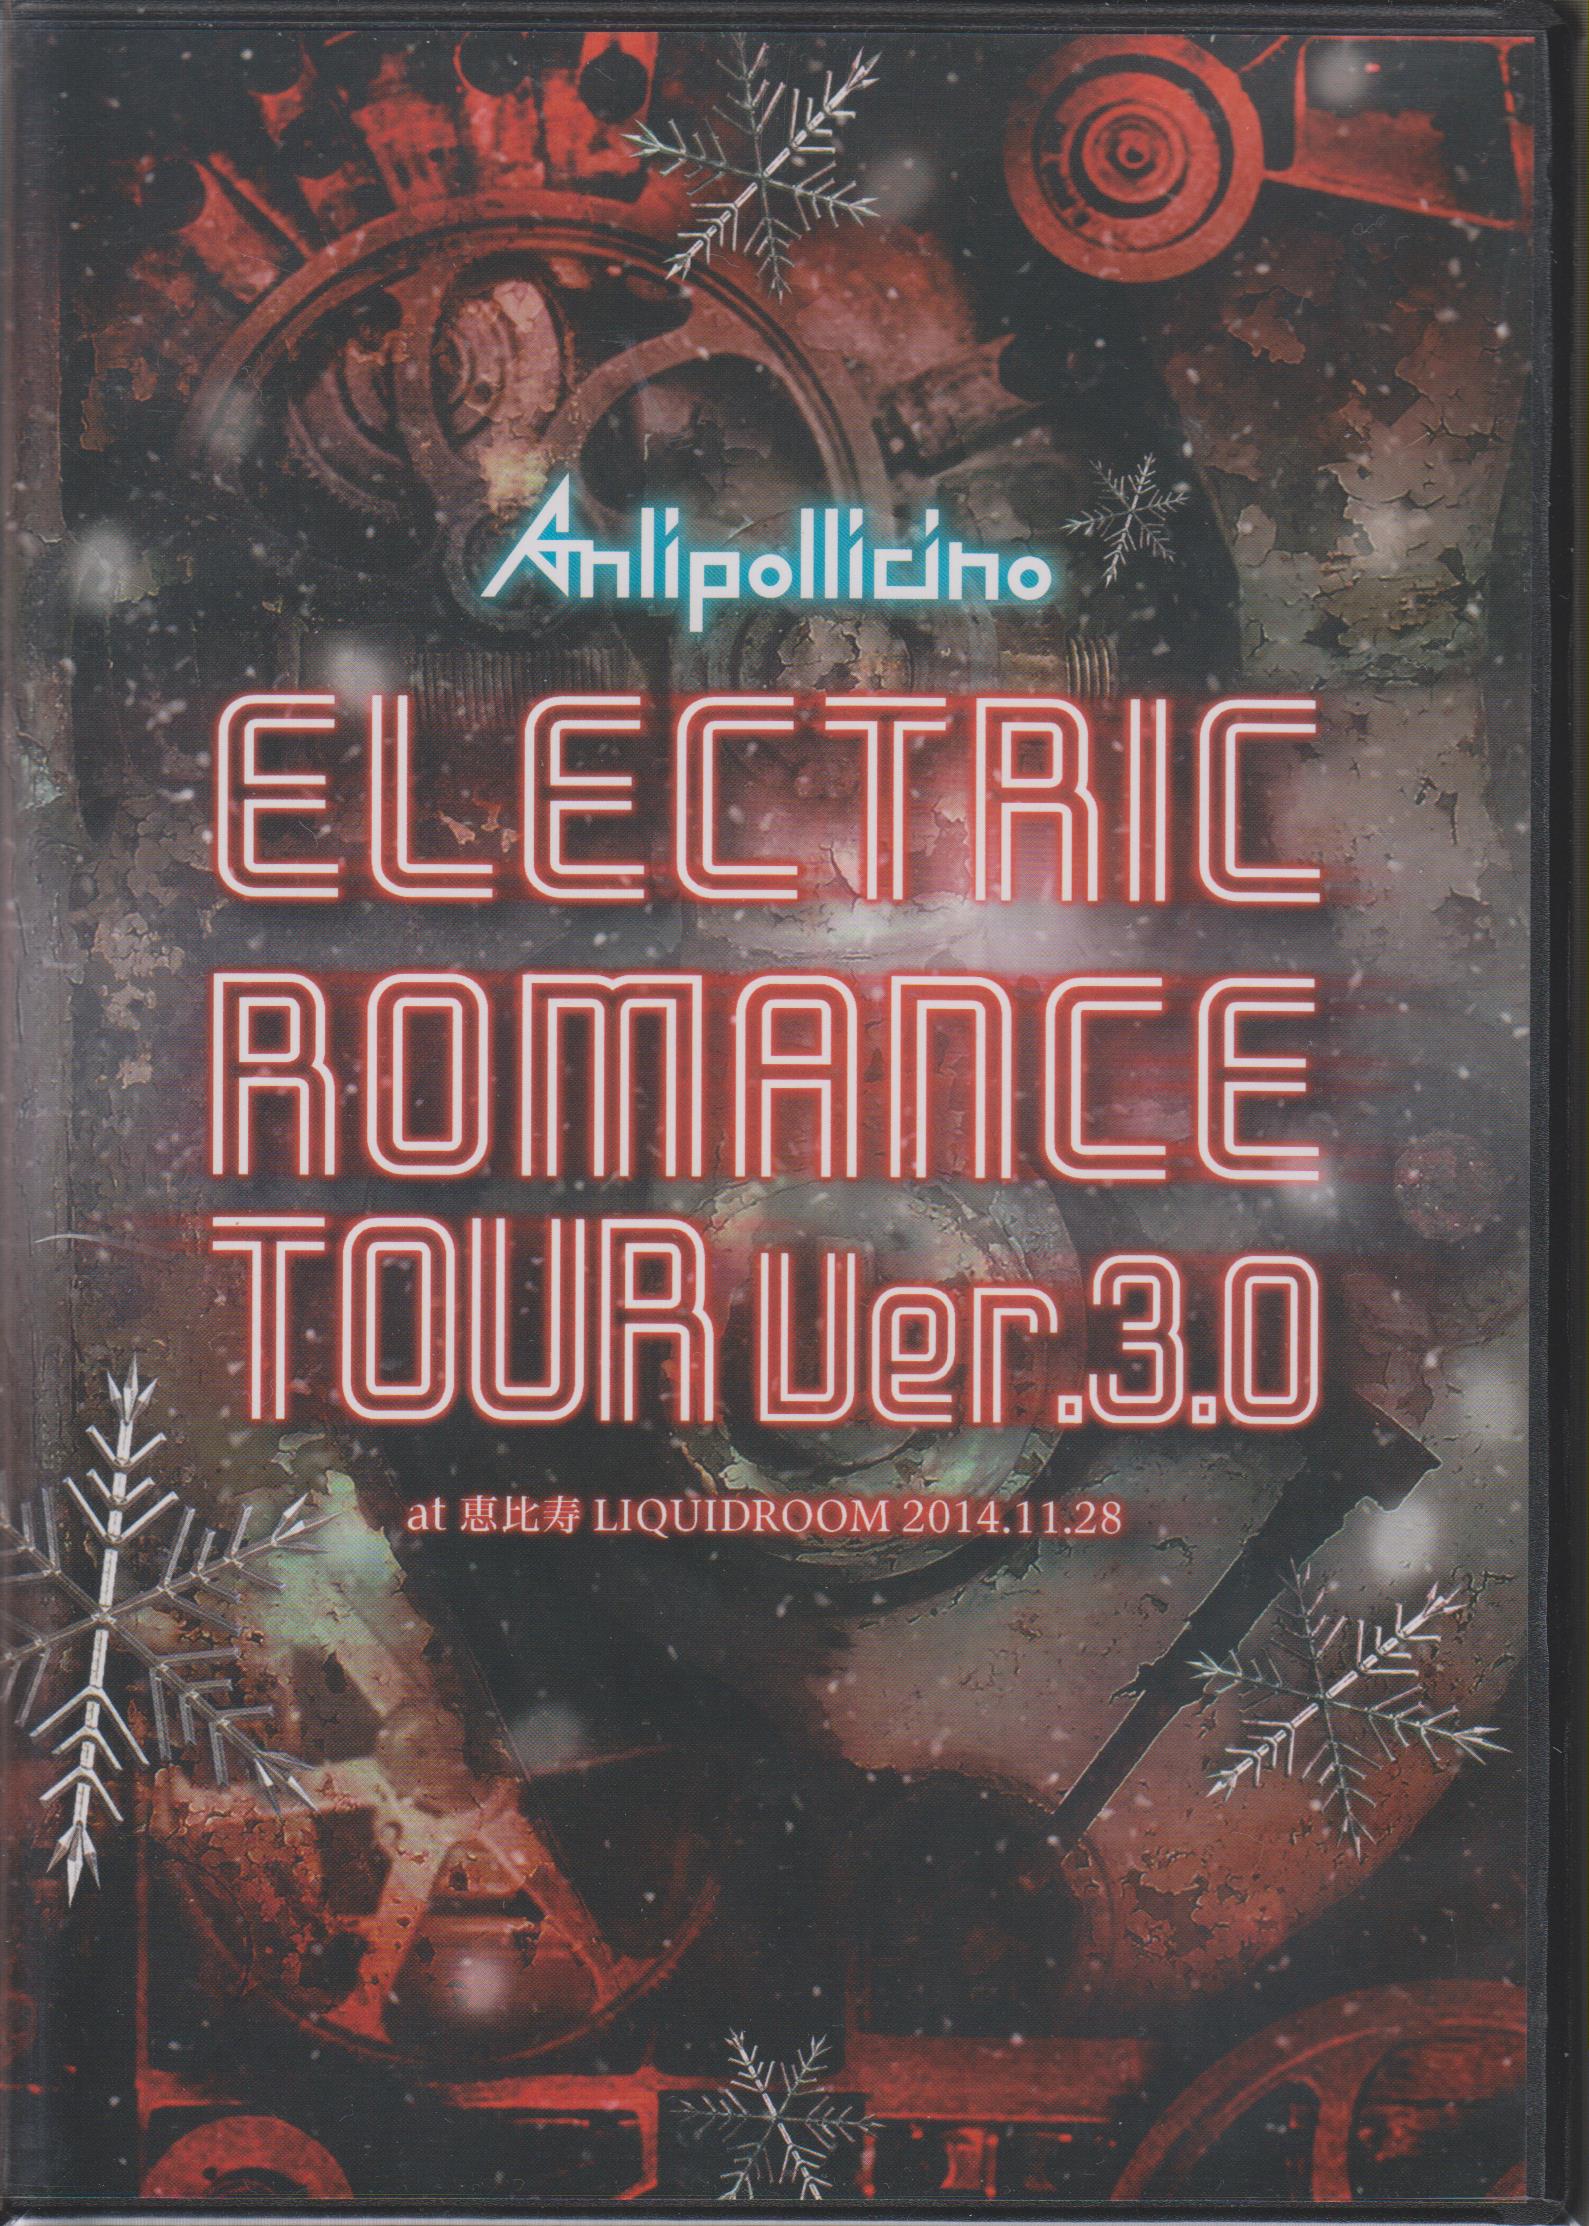 アンリポリチーノ の DVD ELECTRIC ROMANCE TOUR Ver.3.0 at 恵比寿 LIQUIDROOM 2014.11.28